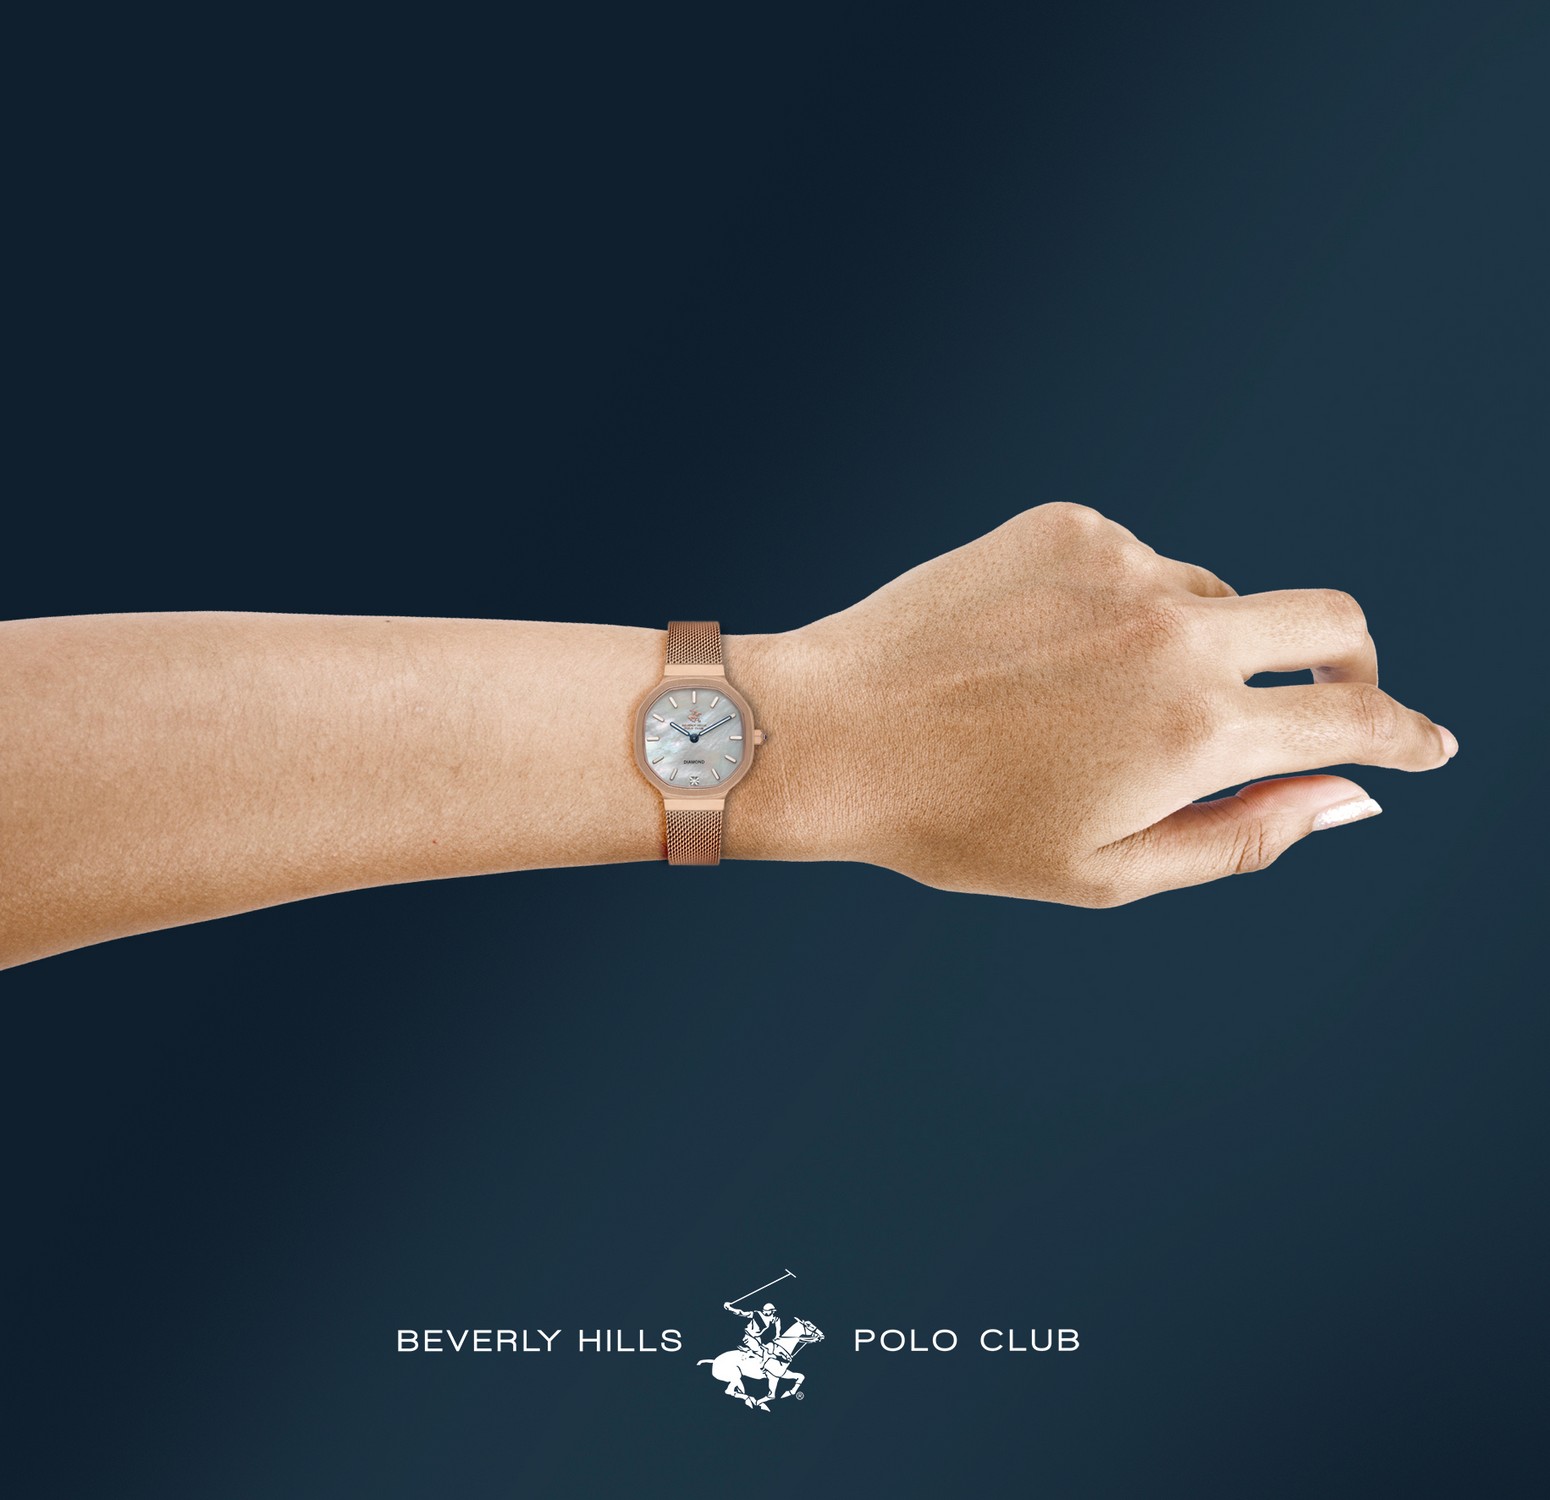 BEVERLY HILLS POLO CLUB  Женские часы, кварцевый механизм, сталь с покрытием, 31 мм